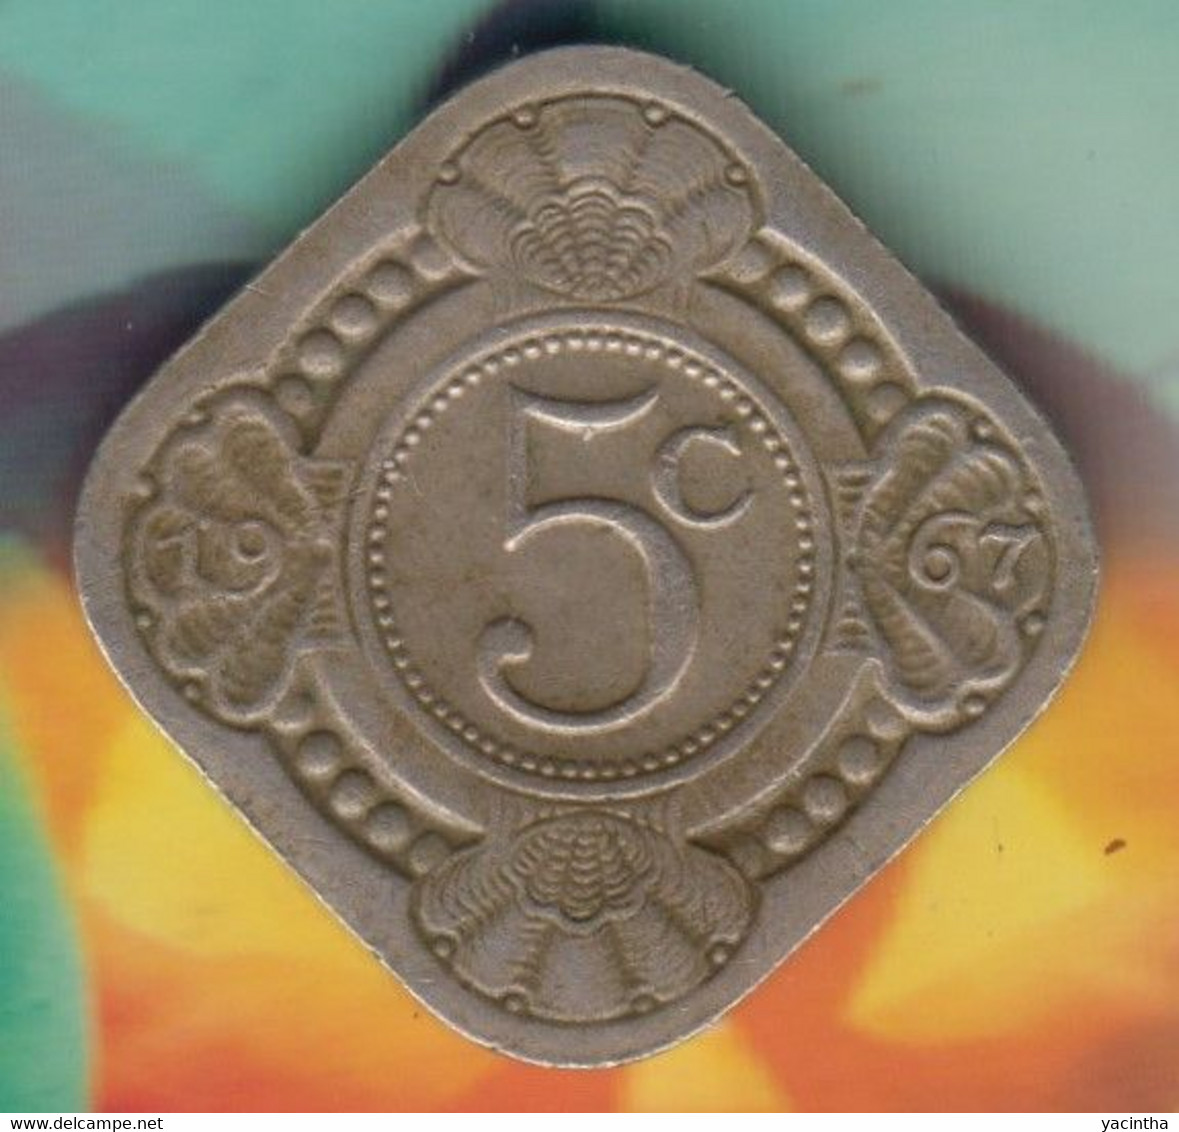 @Y@    Nederlandse Antillen   5  Cent  1967   ( 4744 ) - Antilles Néerlandaises